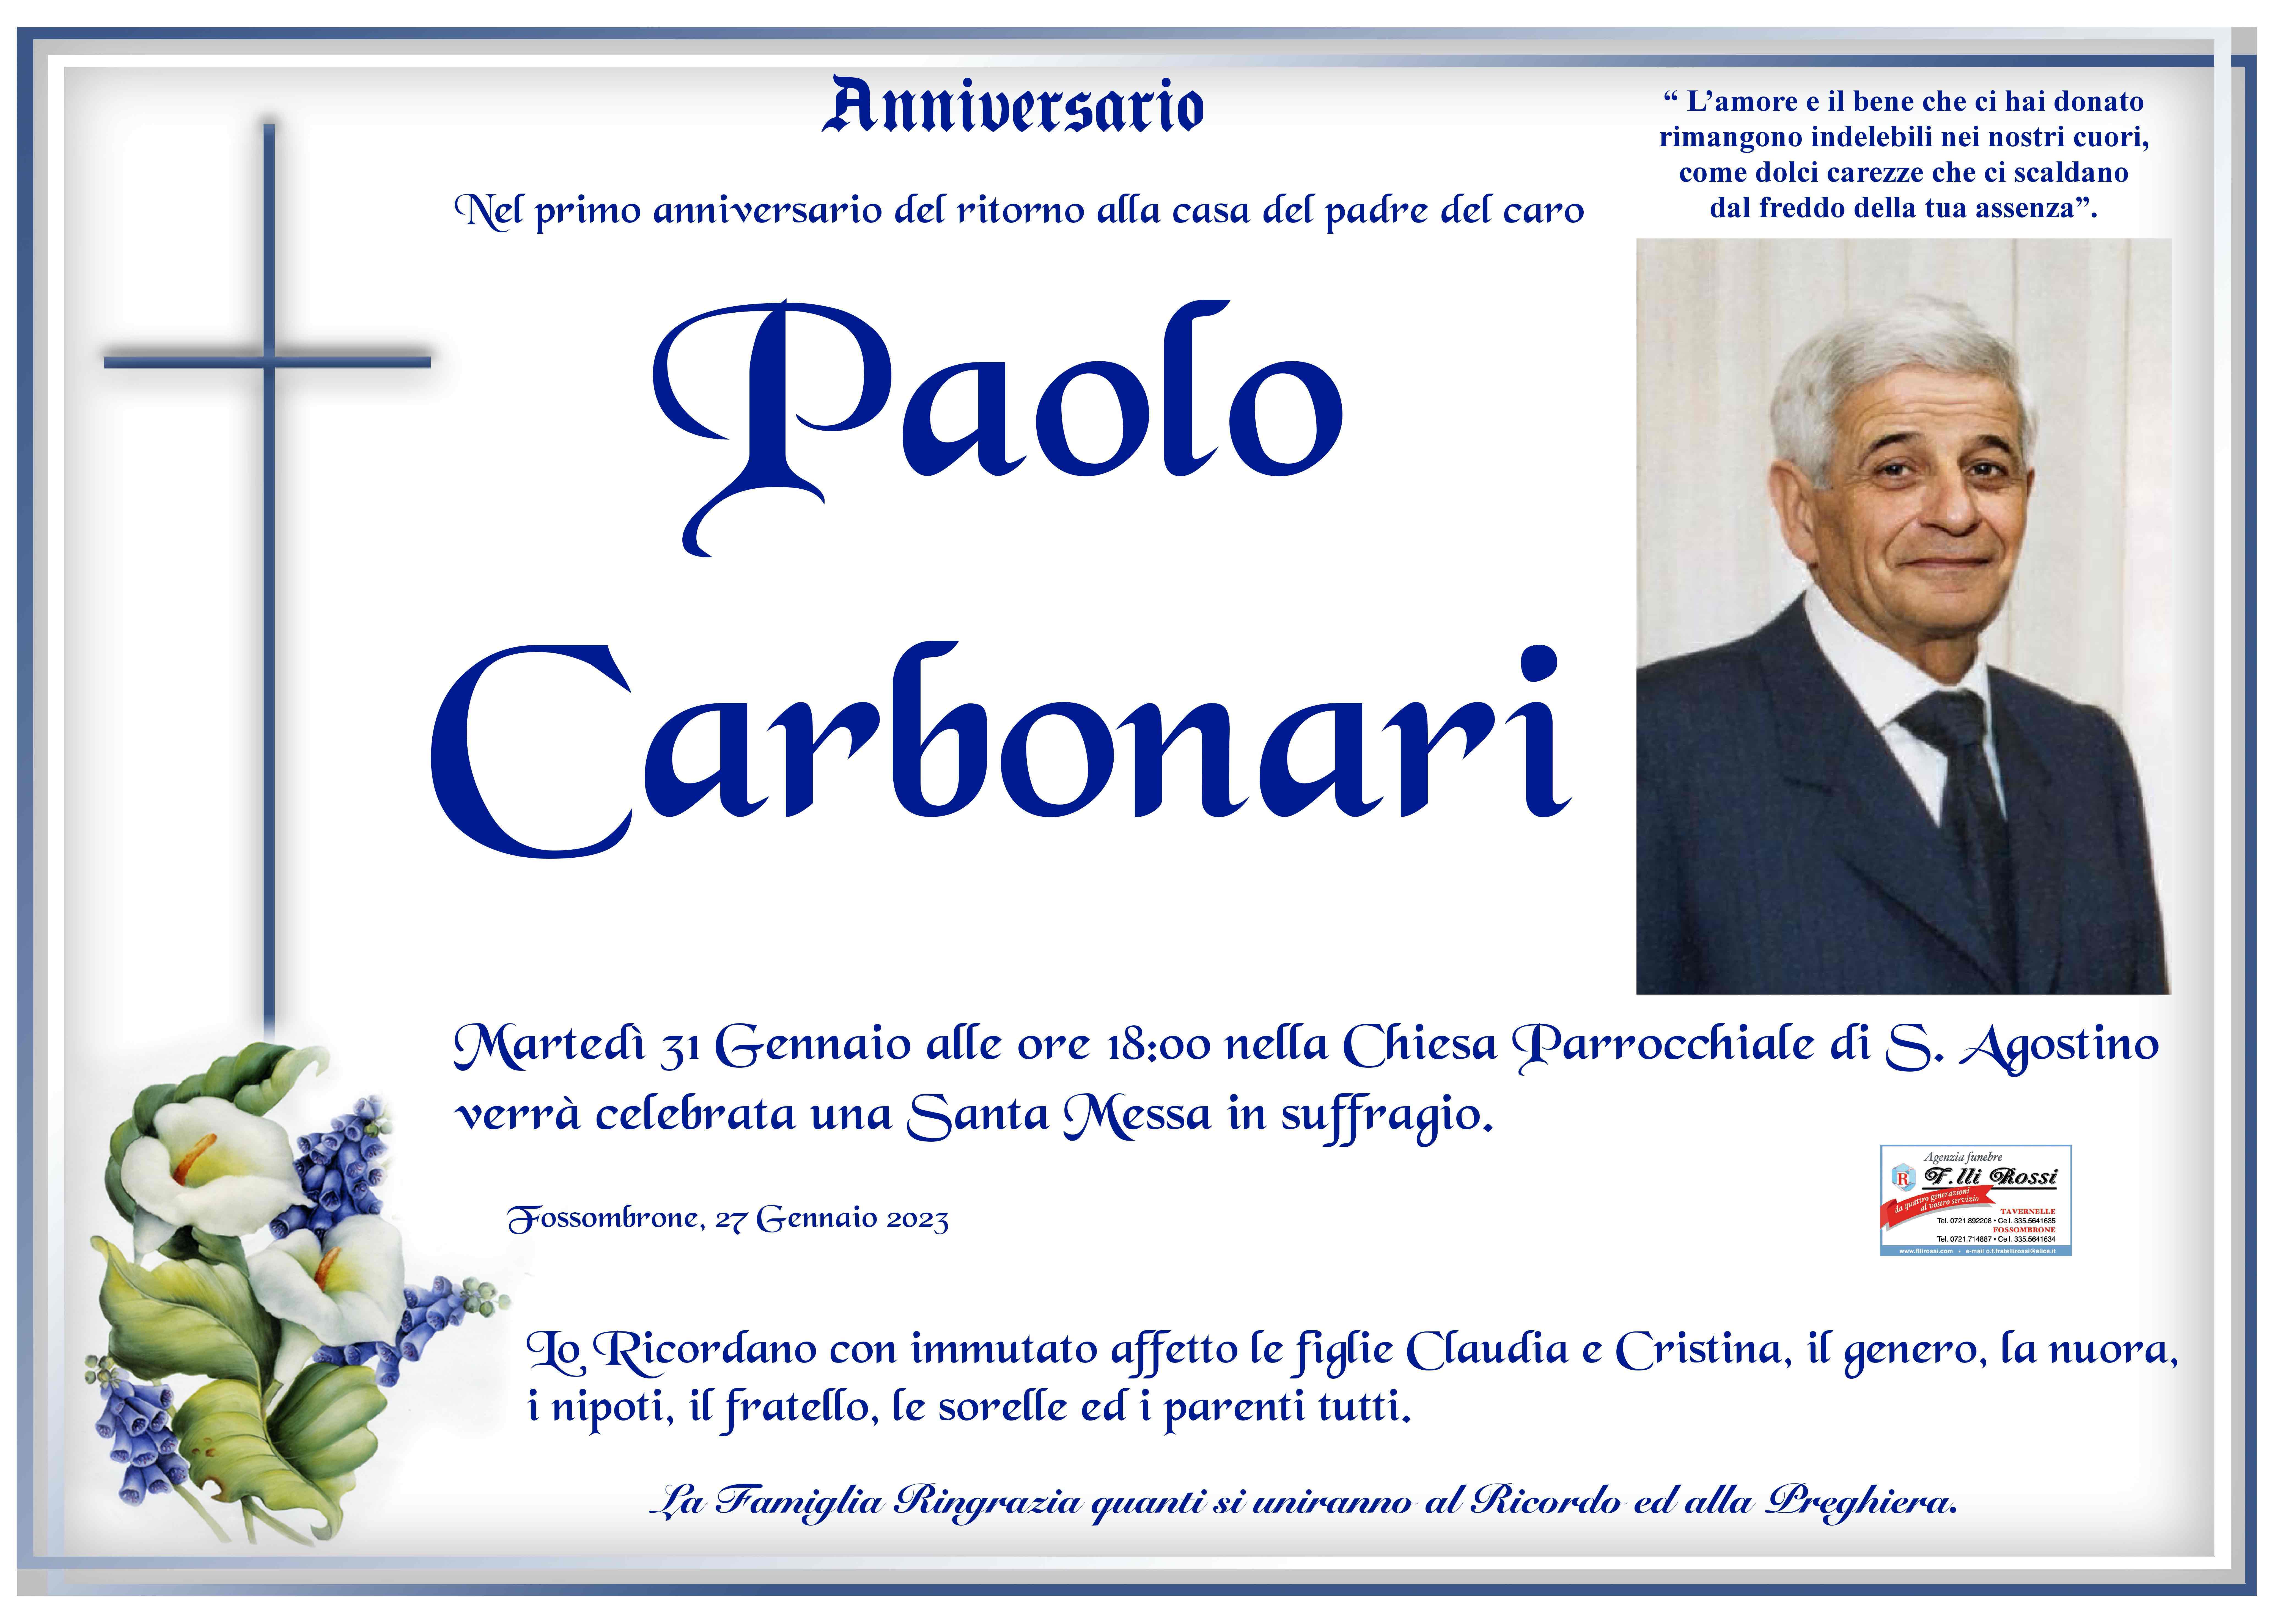 Paolo Carbonari